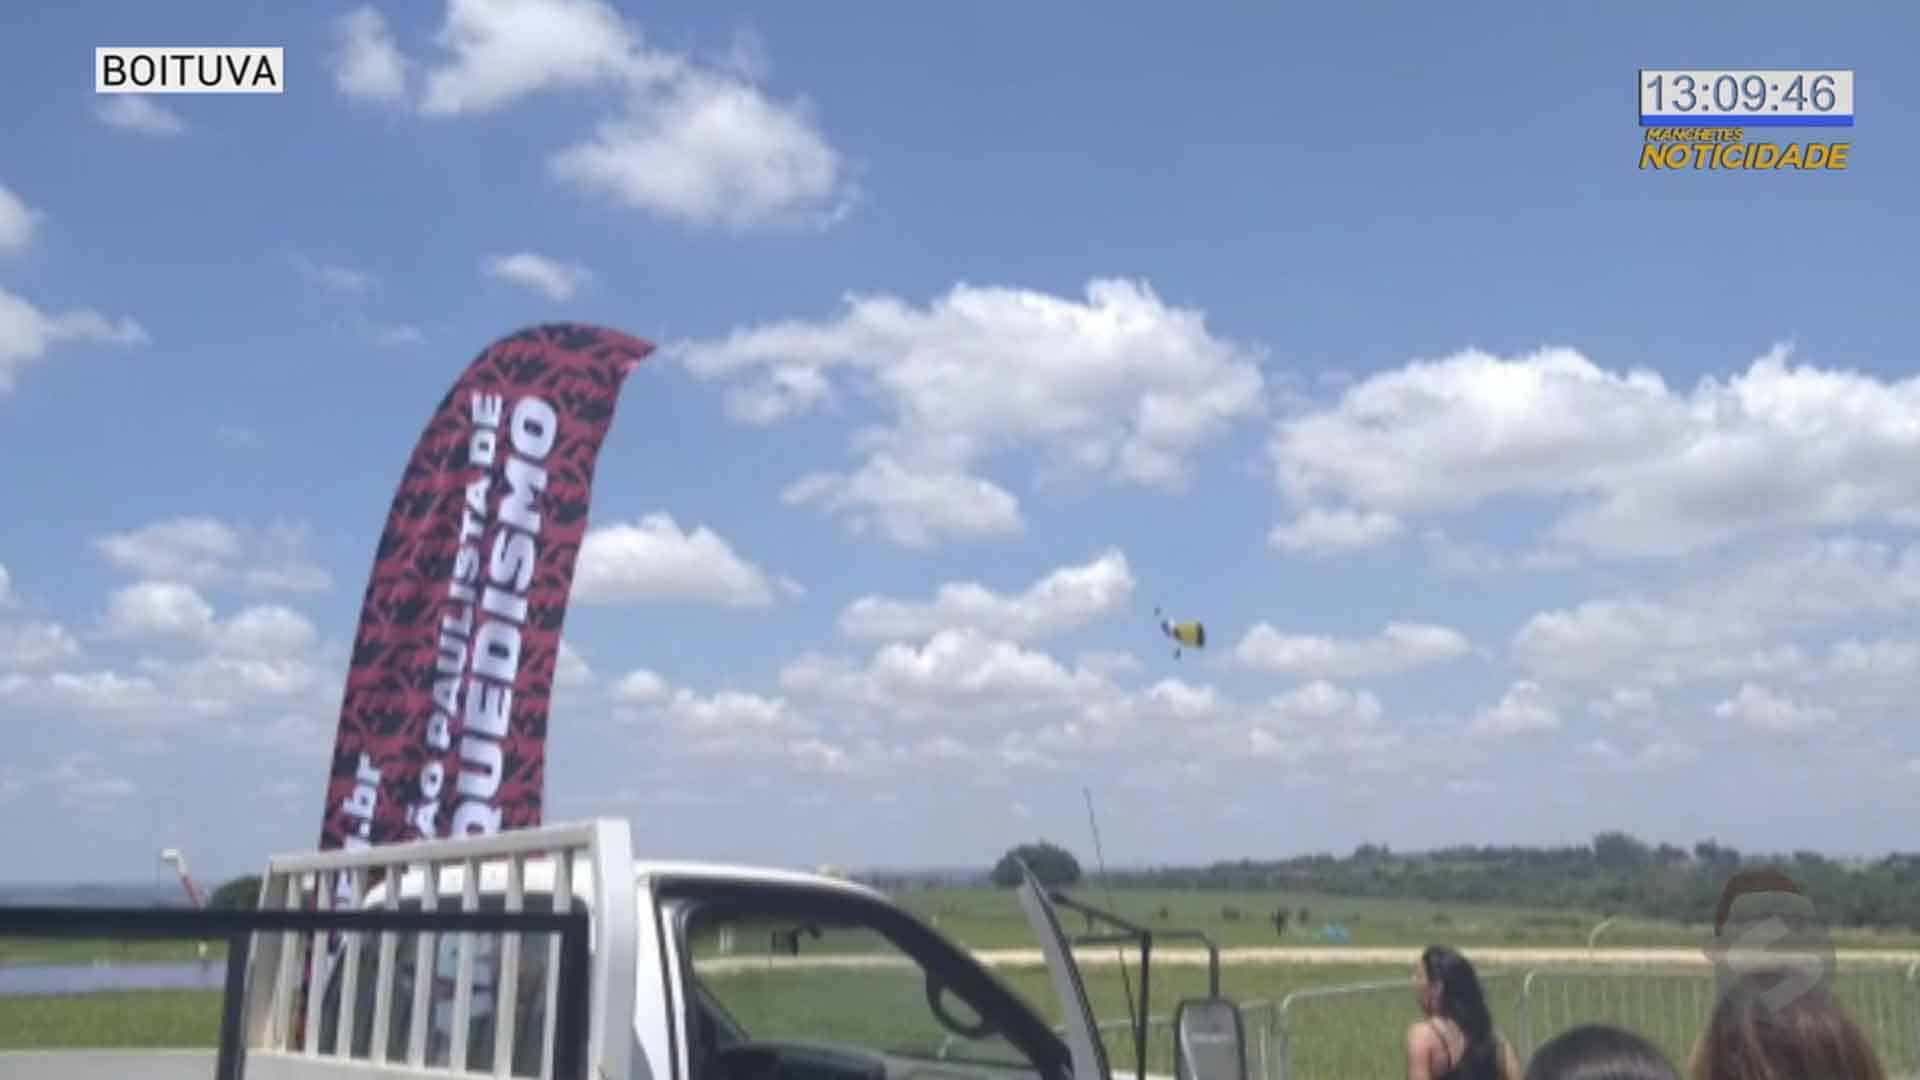 Homem morre em salto de paraquedas em Boituva